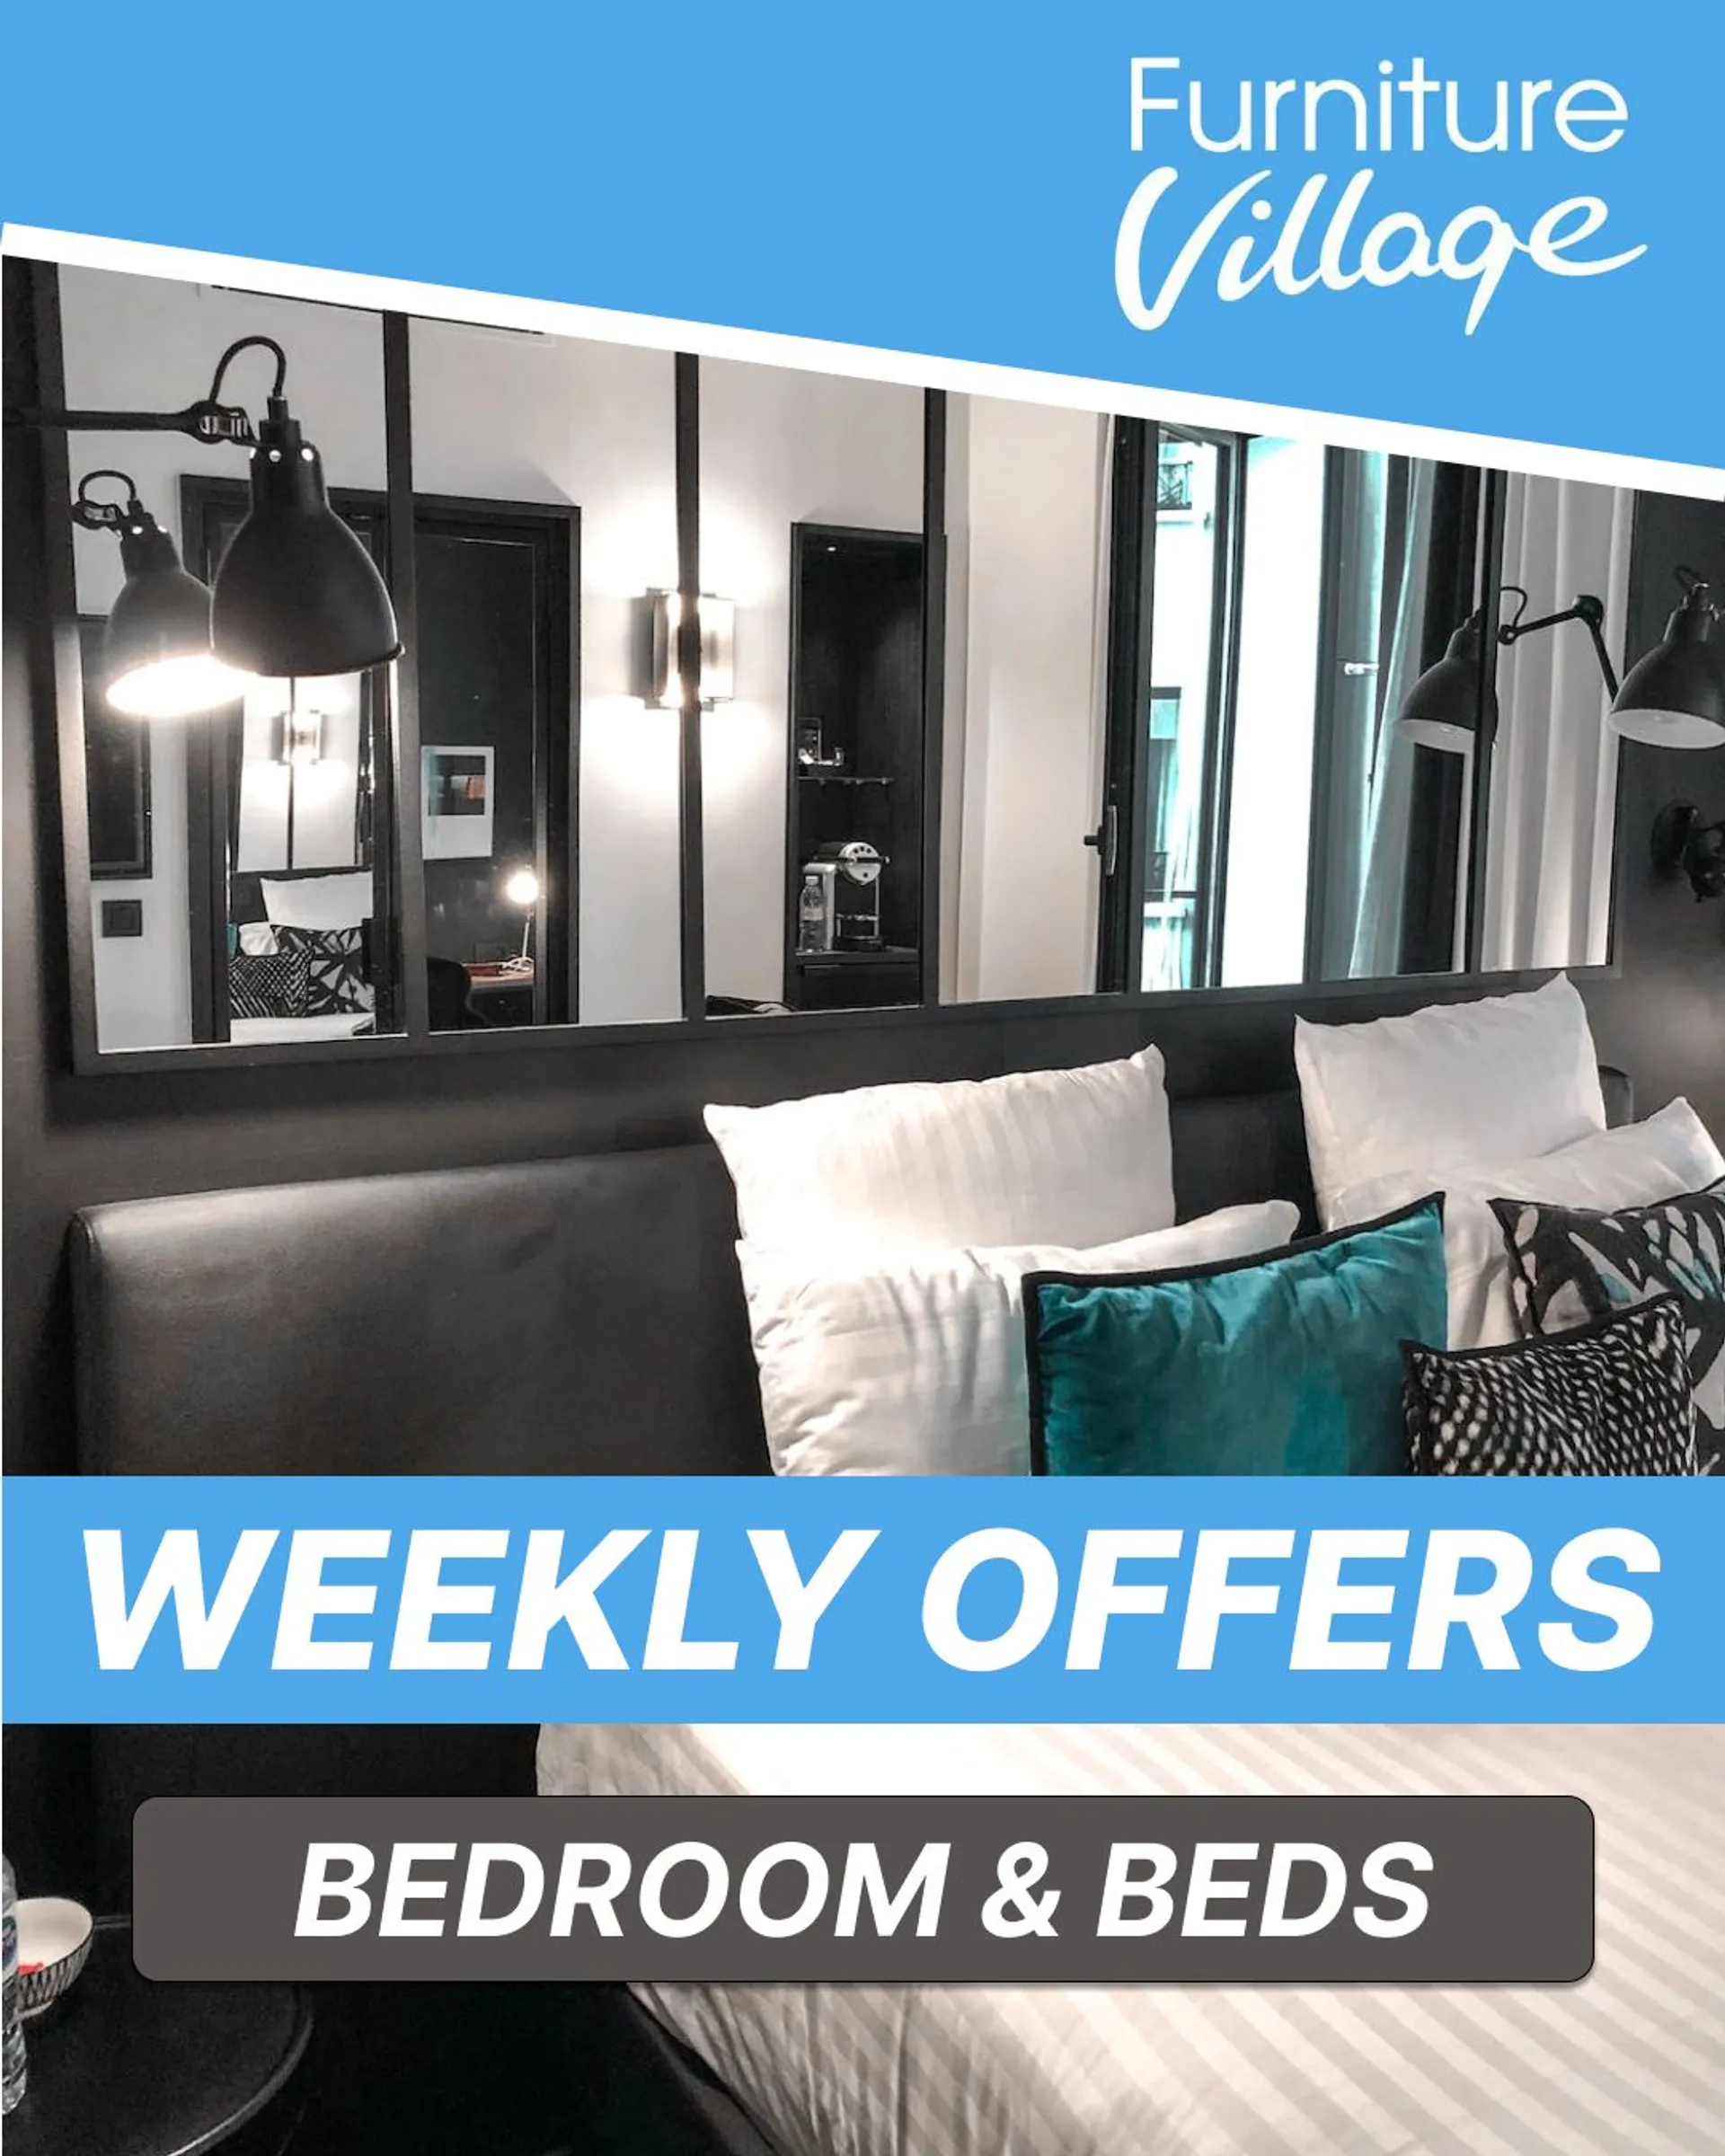 Furniture Village - Beds & Bedroom offers